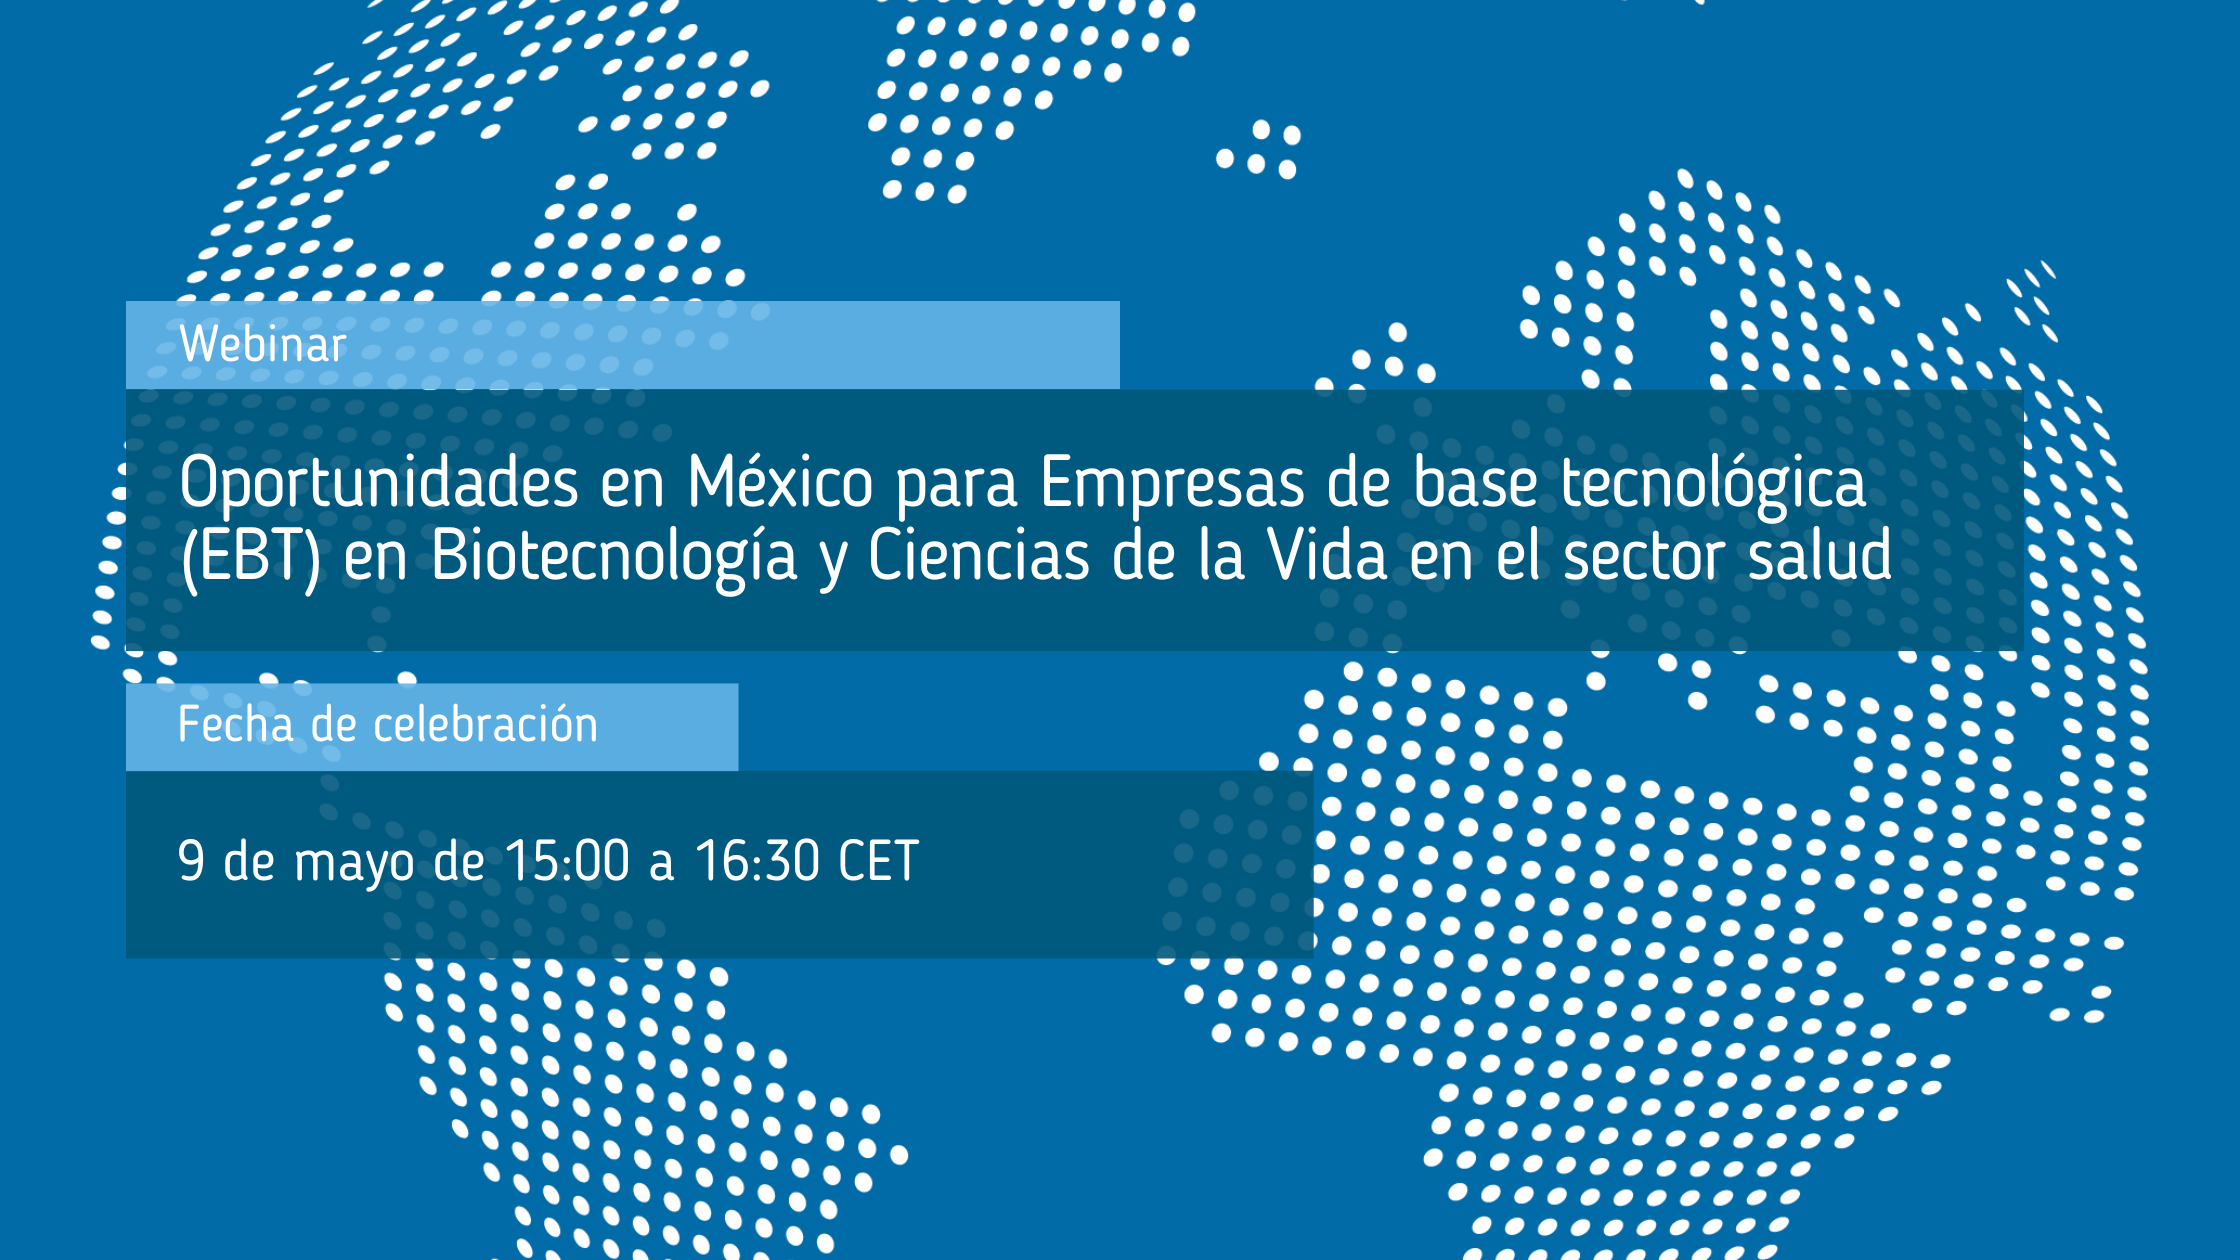 Webinar_sobre_oportunidades_en_México_para_Empresas_de_base_tecnológica_EBT_en_Biotecnología_y_Ciencias_de_la_Vida_en_el_sector_salud